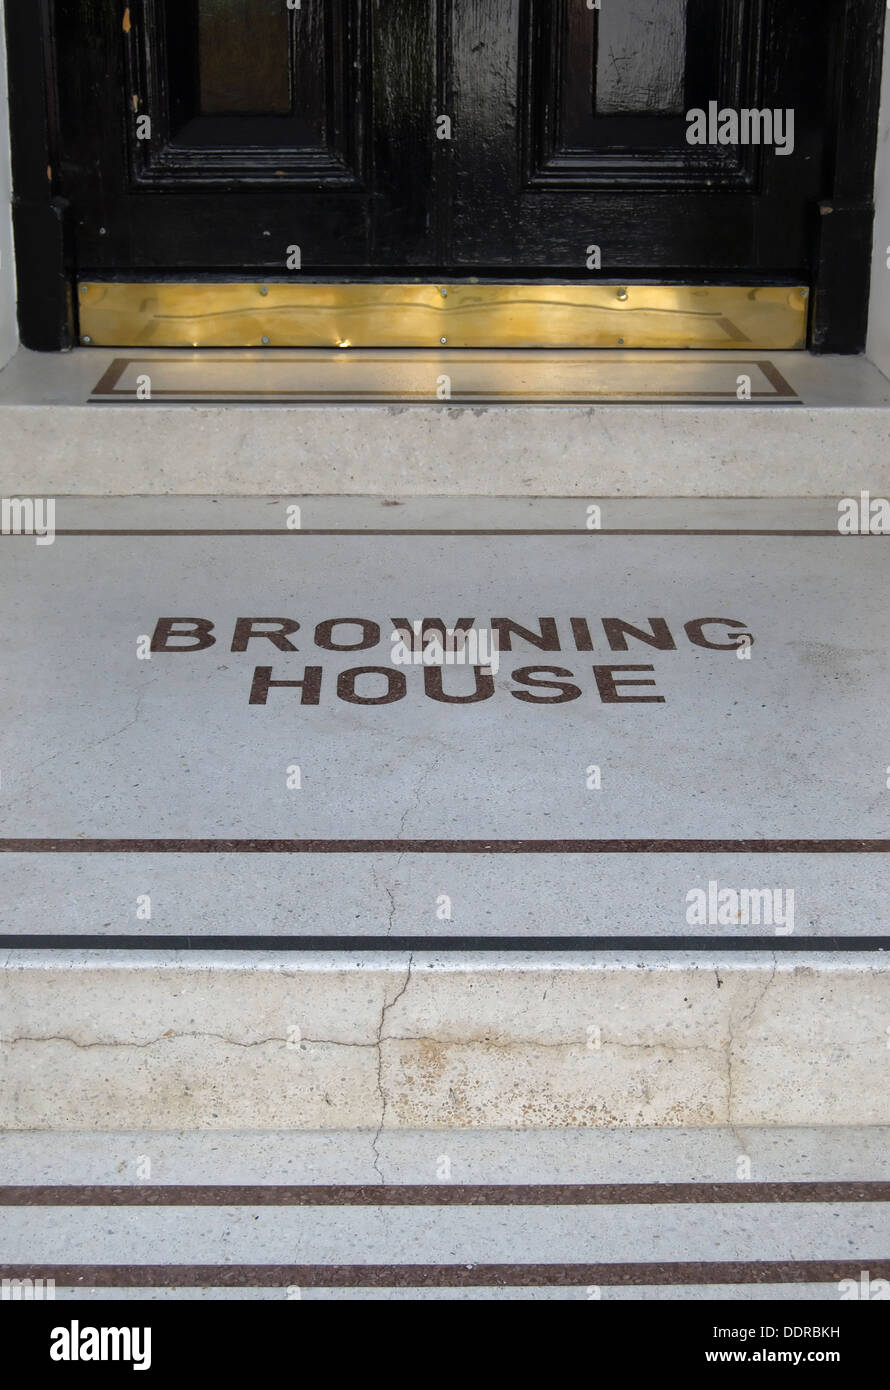 À l'étape d'entrée, chambre Browning un immeuble autrefois le poète Robert Browning, Kensington, Londres, Angleterre Banque D'Images